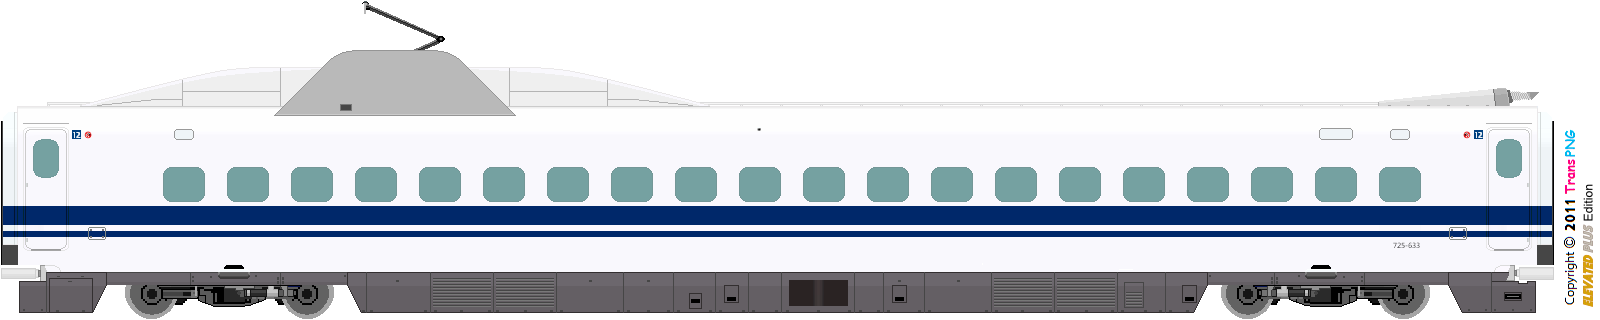 [9010] Central Japan Railway 52286607357_d9d21ab31a_o